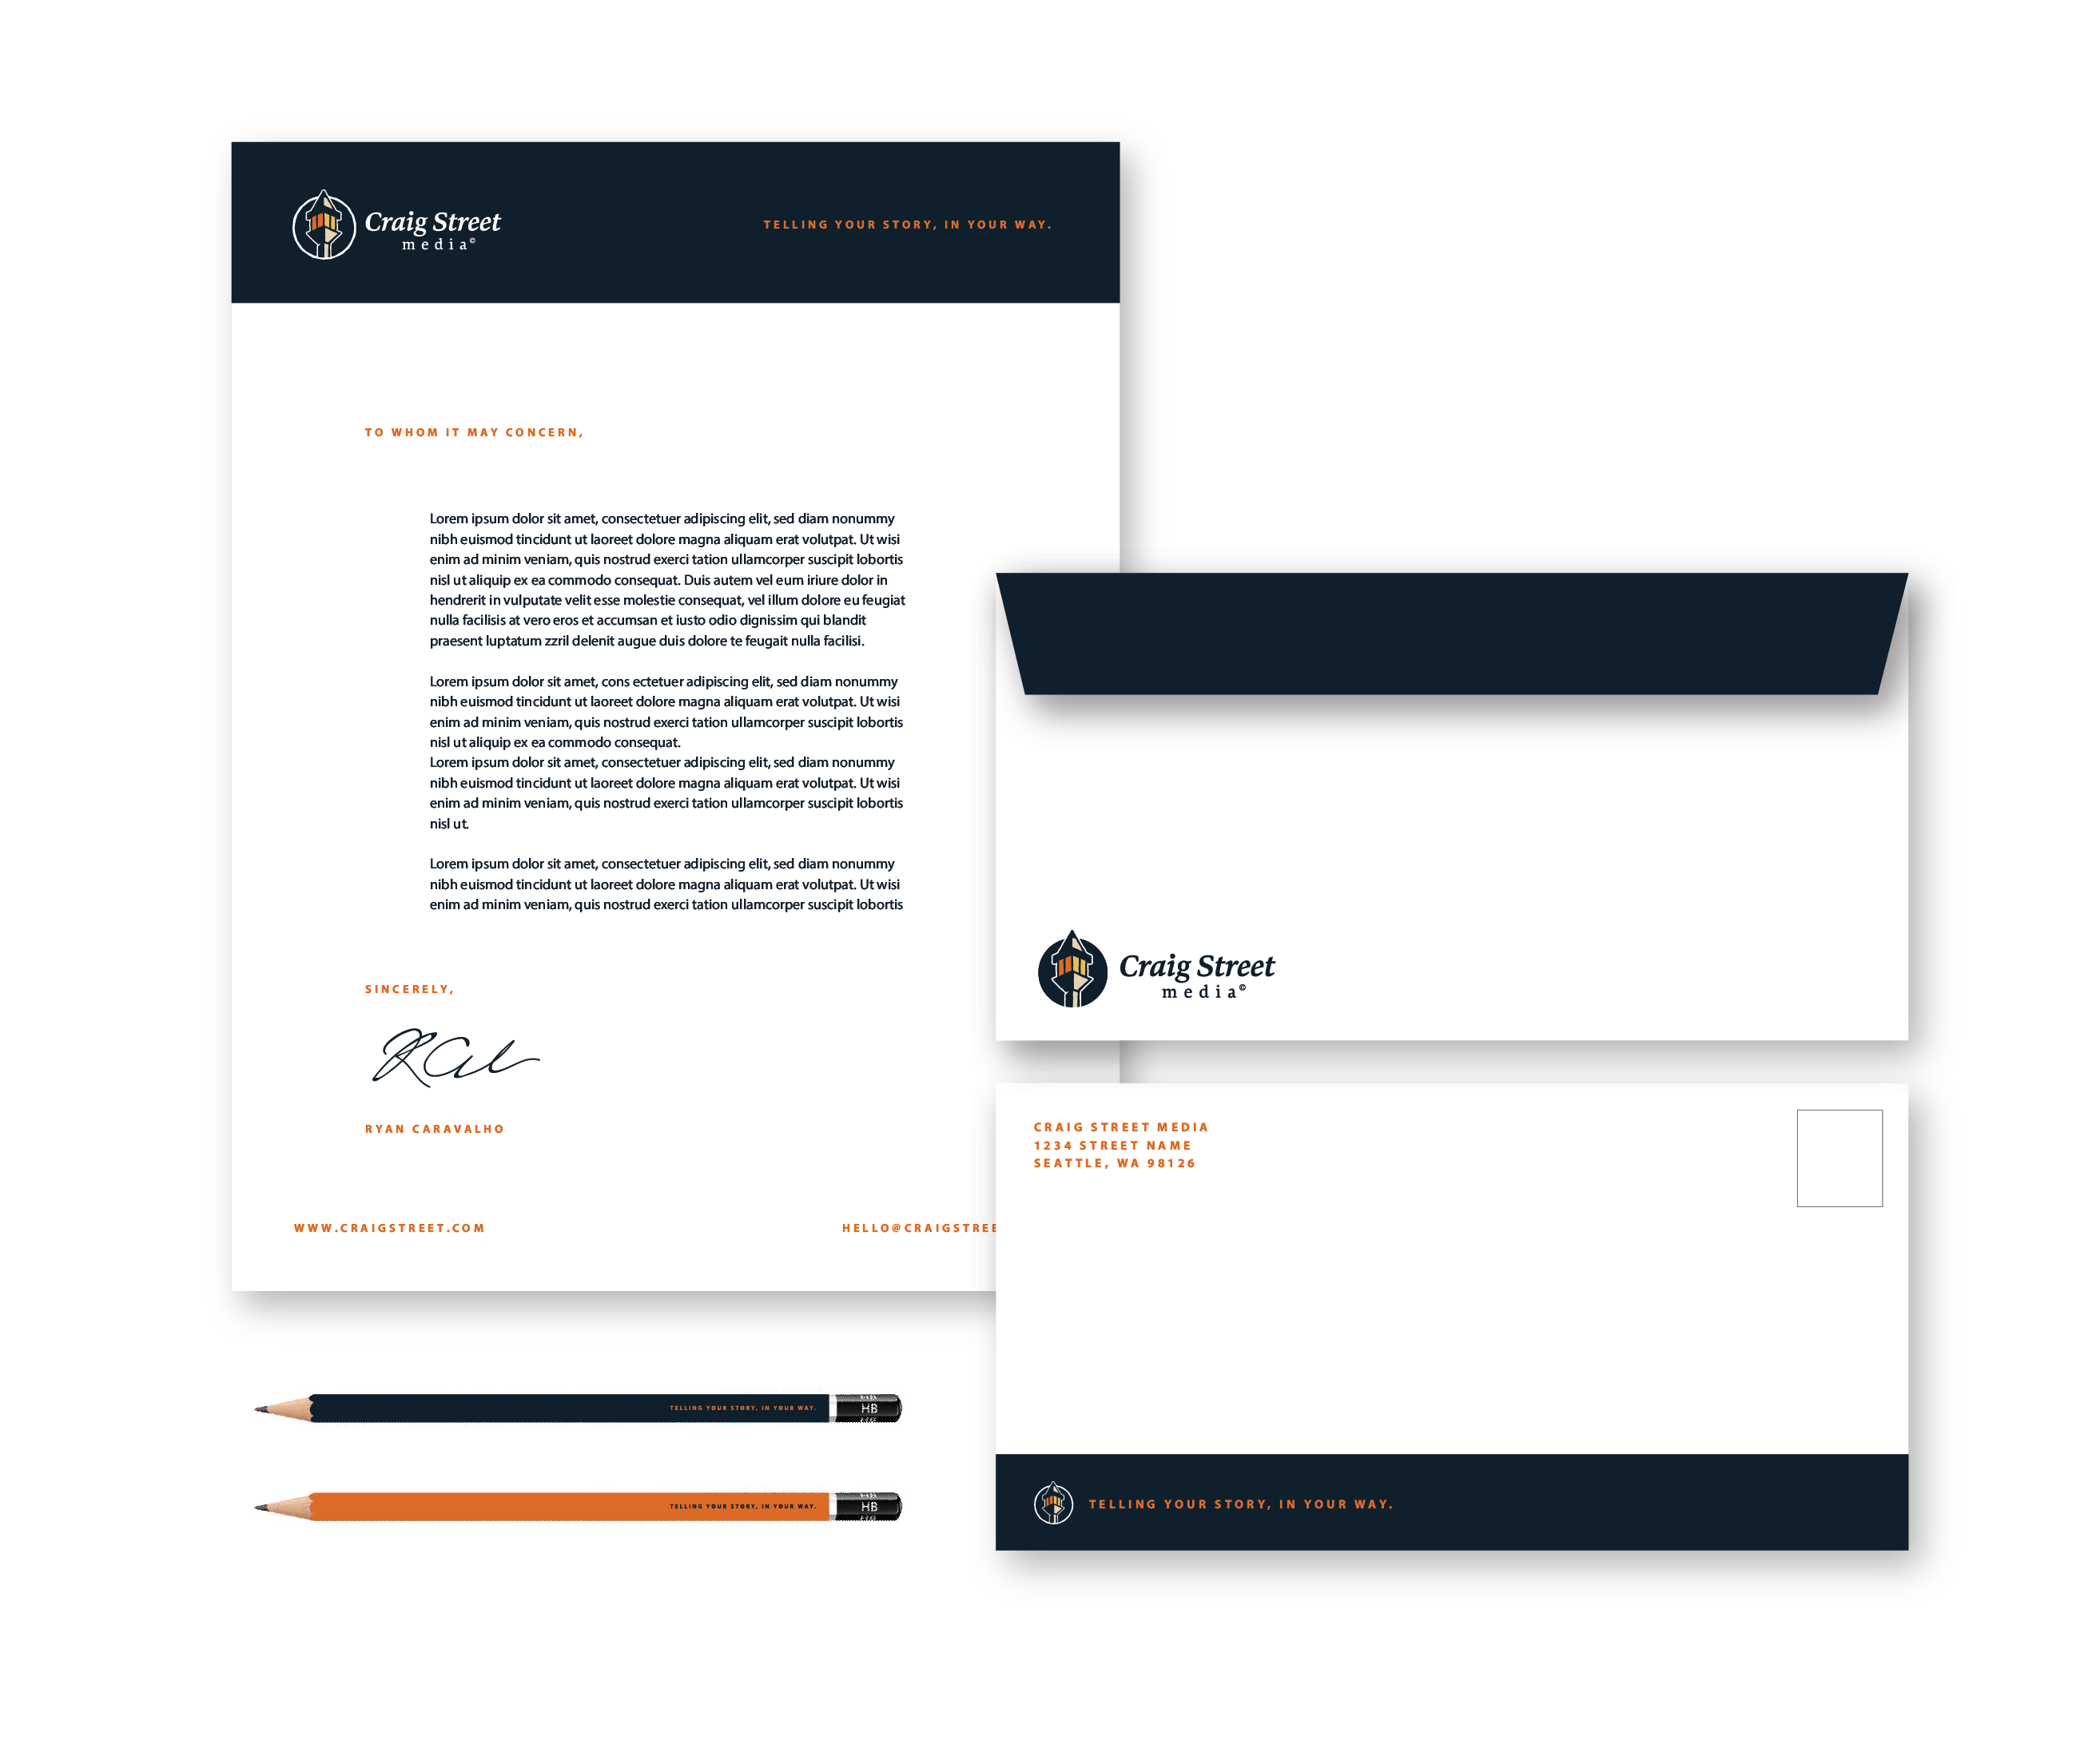 Envelope and letterhead design for marketing agency